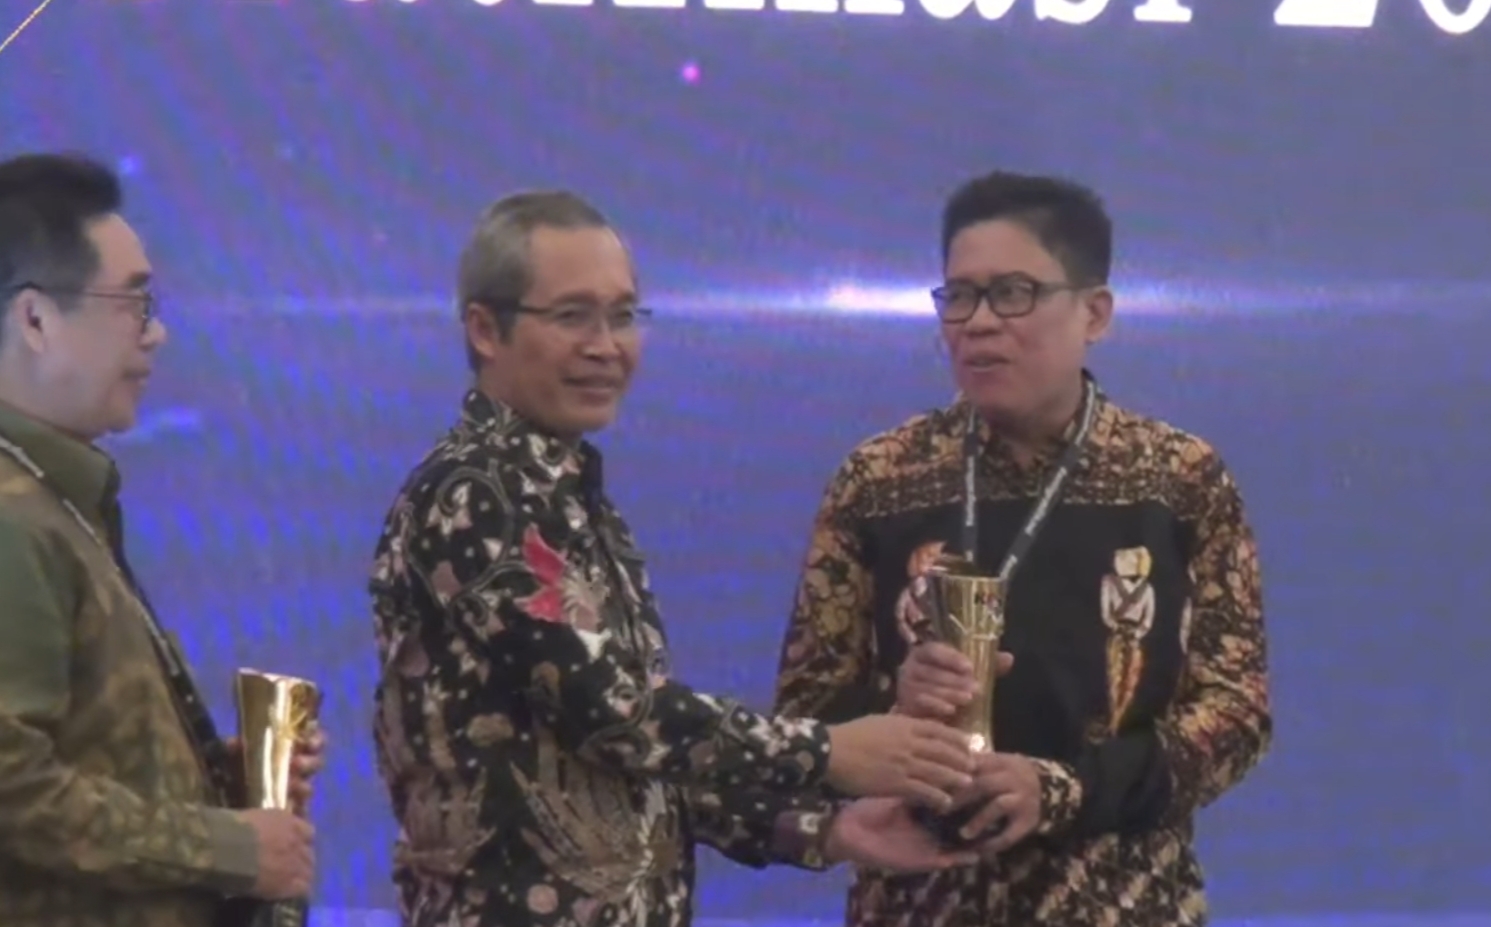 Wakil Ketua KPK Alexander Marwata Memberikan Penghargaan Kepada Rahmad Junaedi Pemkab Bojonegoro